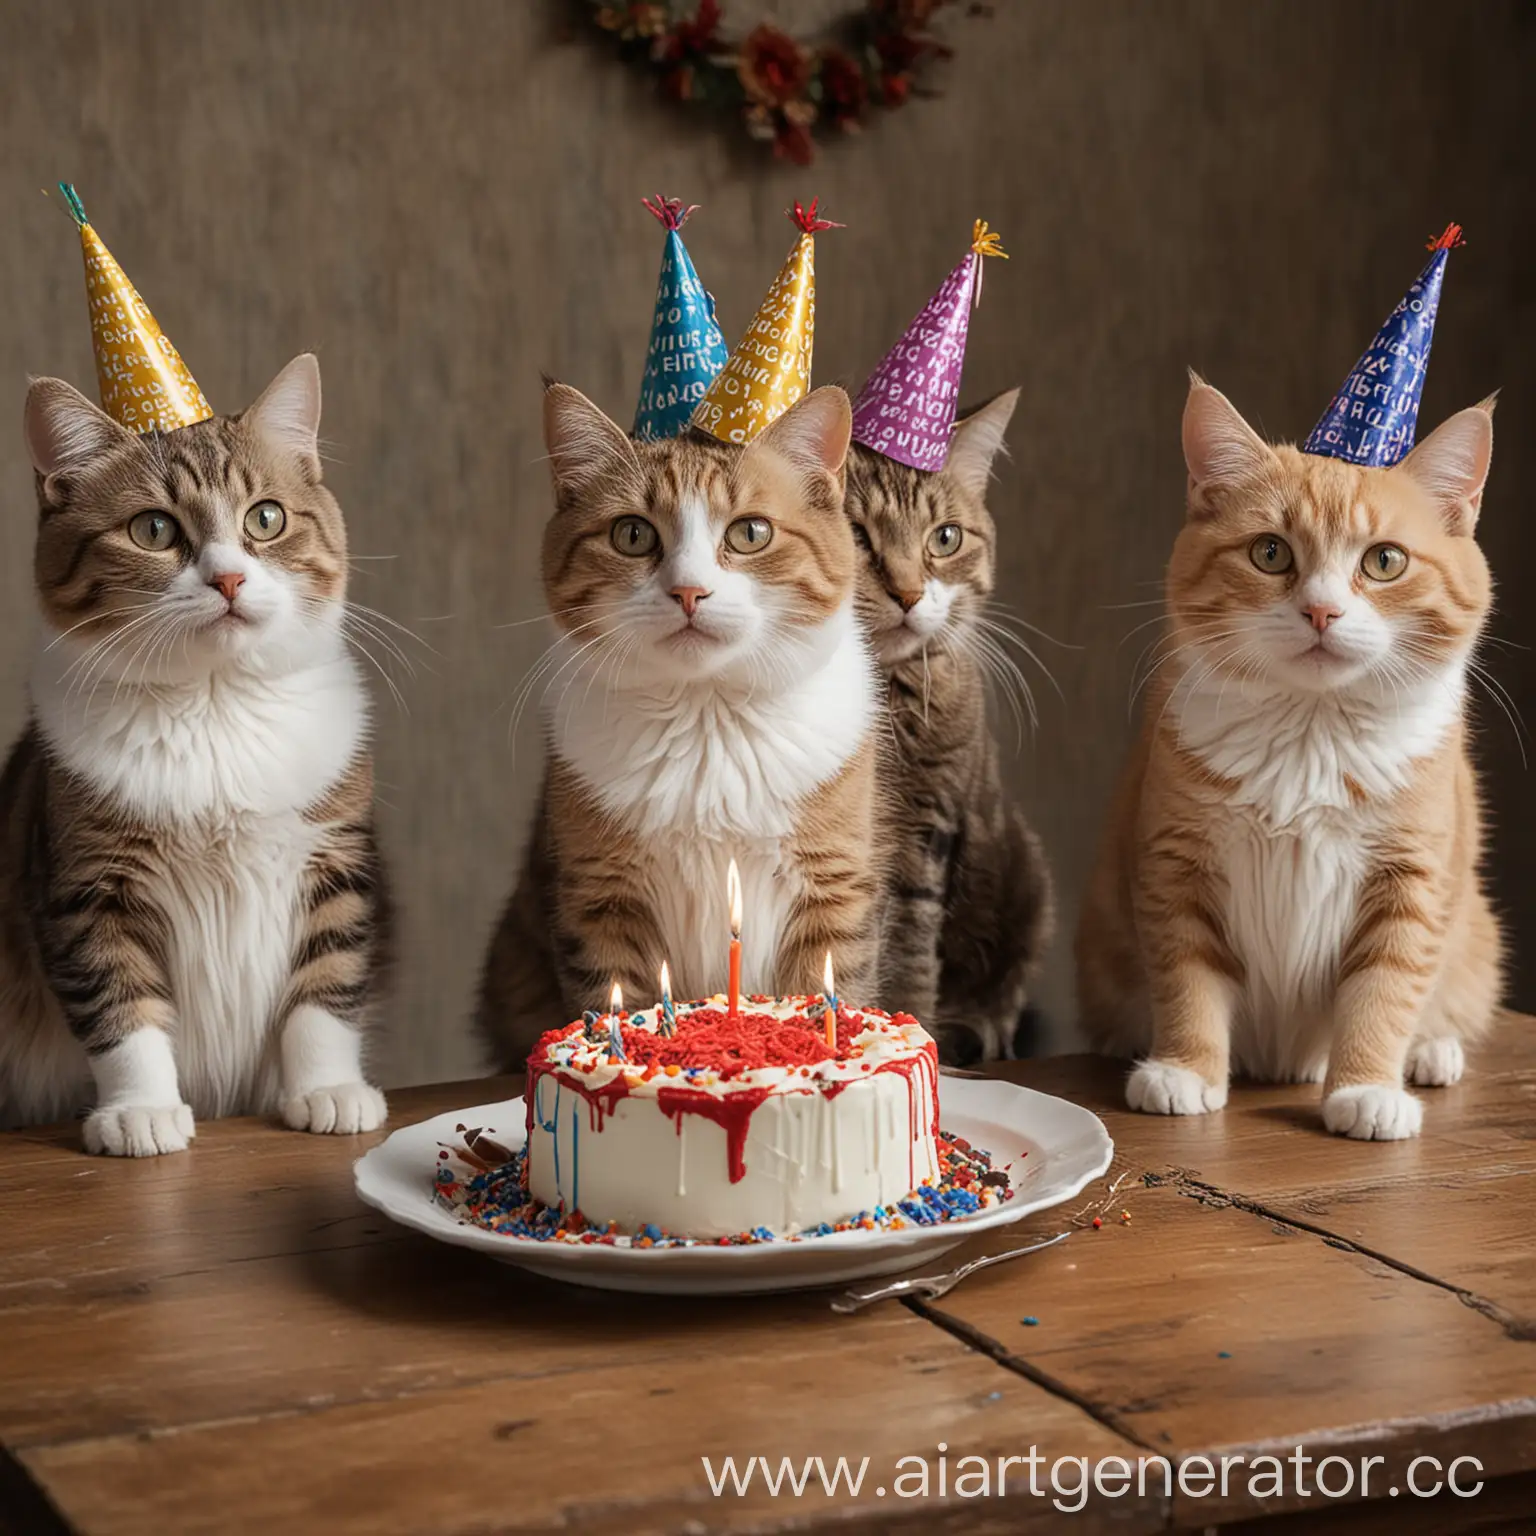 4 кота сидят за столом и отмечают день рождения